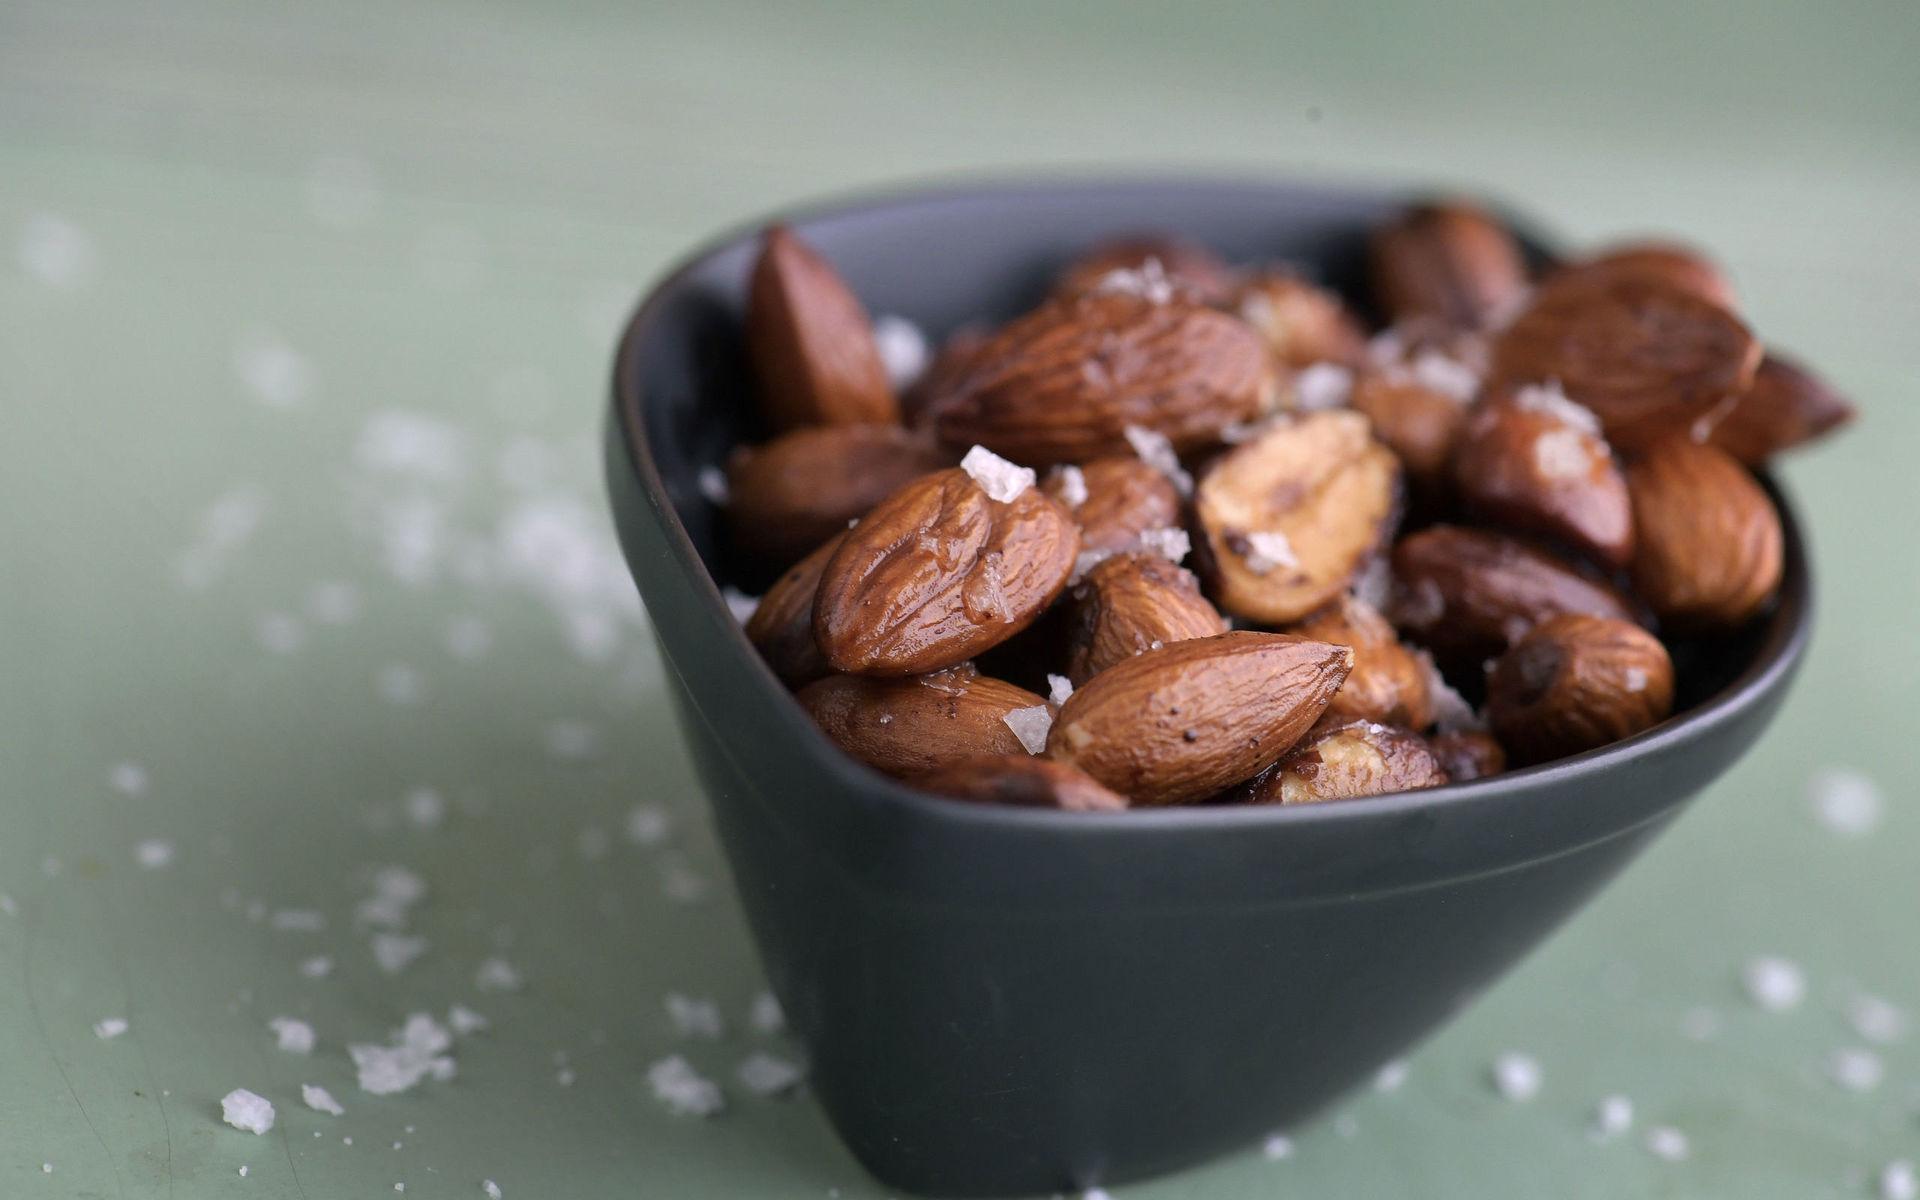 Byt ut chips och jordnötter mot rökiga salta mandlar. Betydligt nyttigare och enkelt att göra själv.